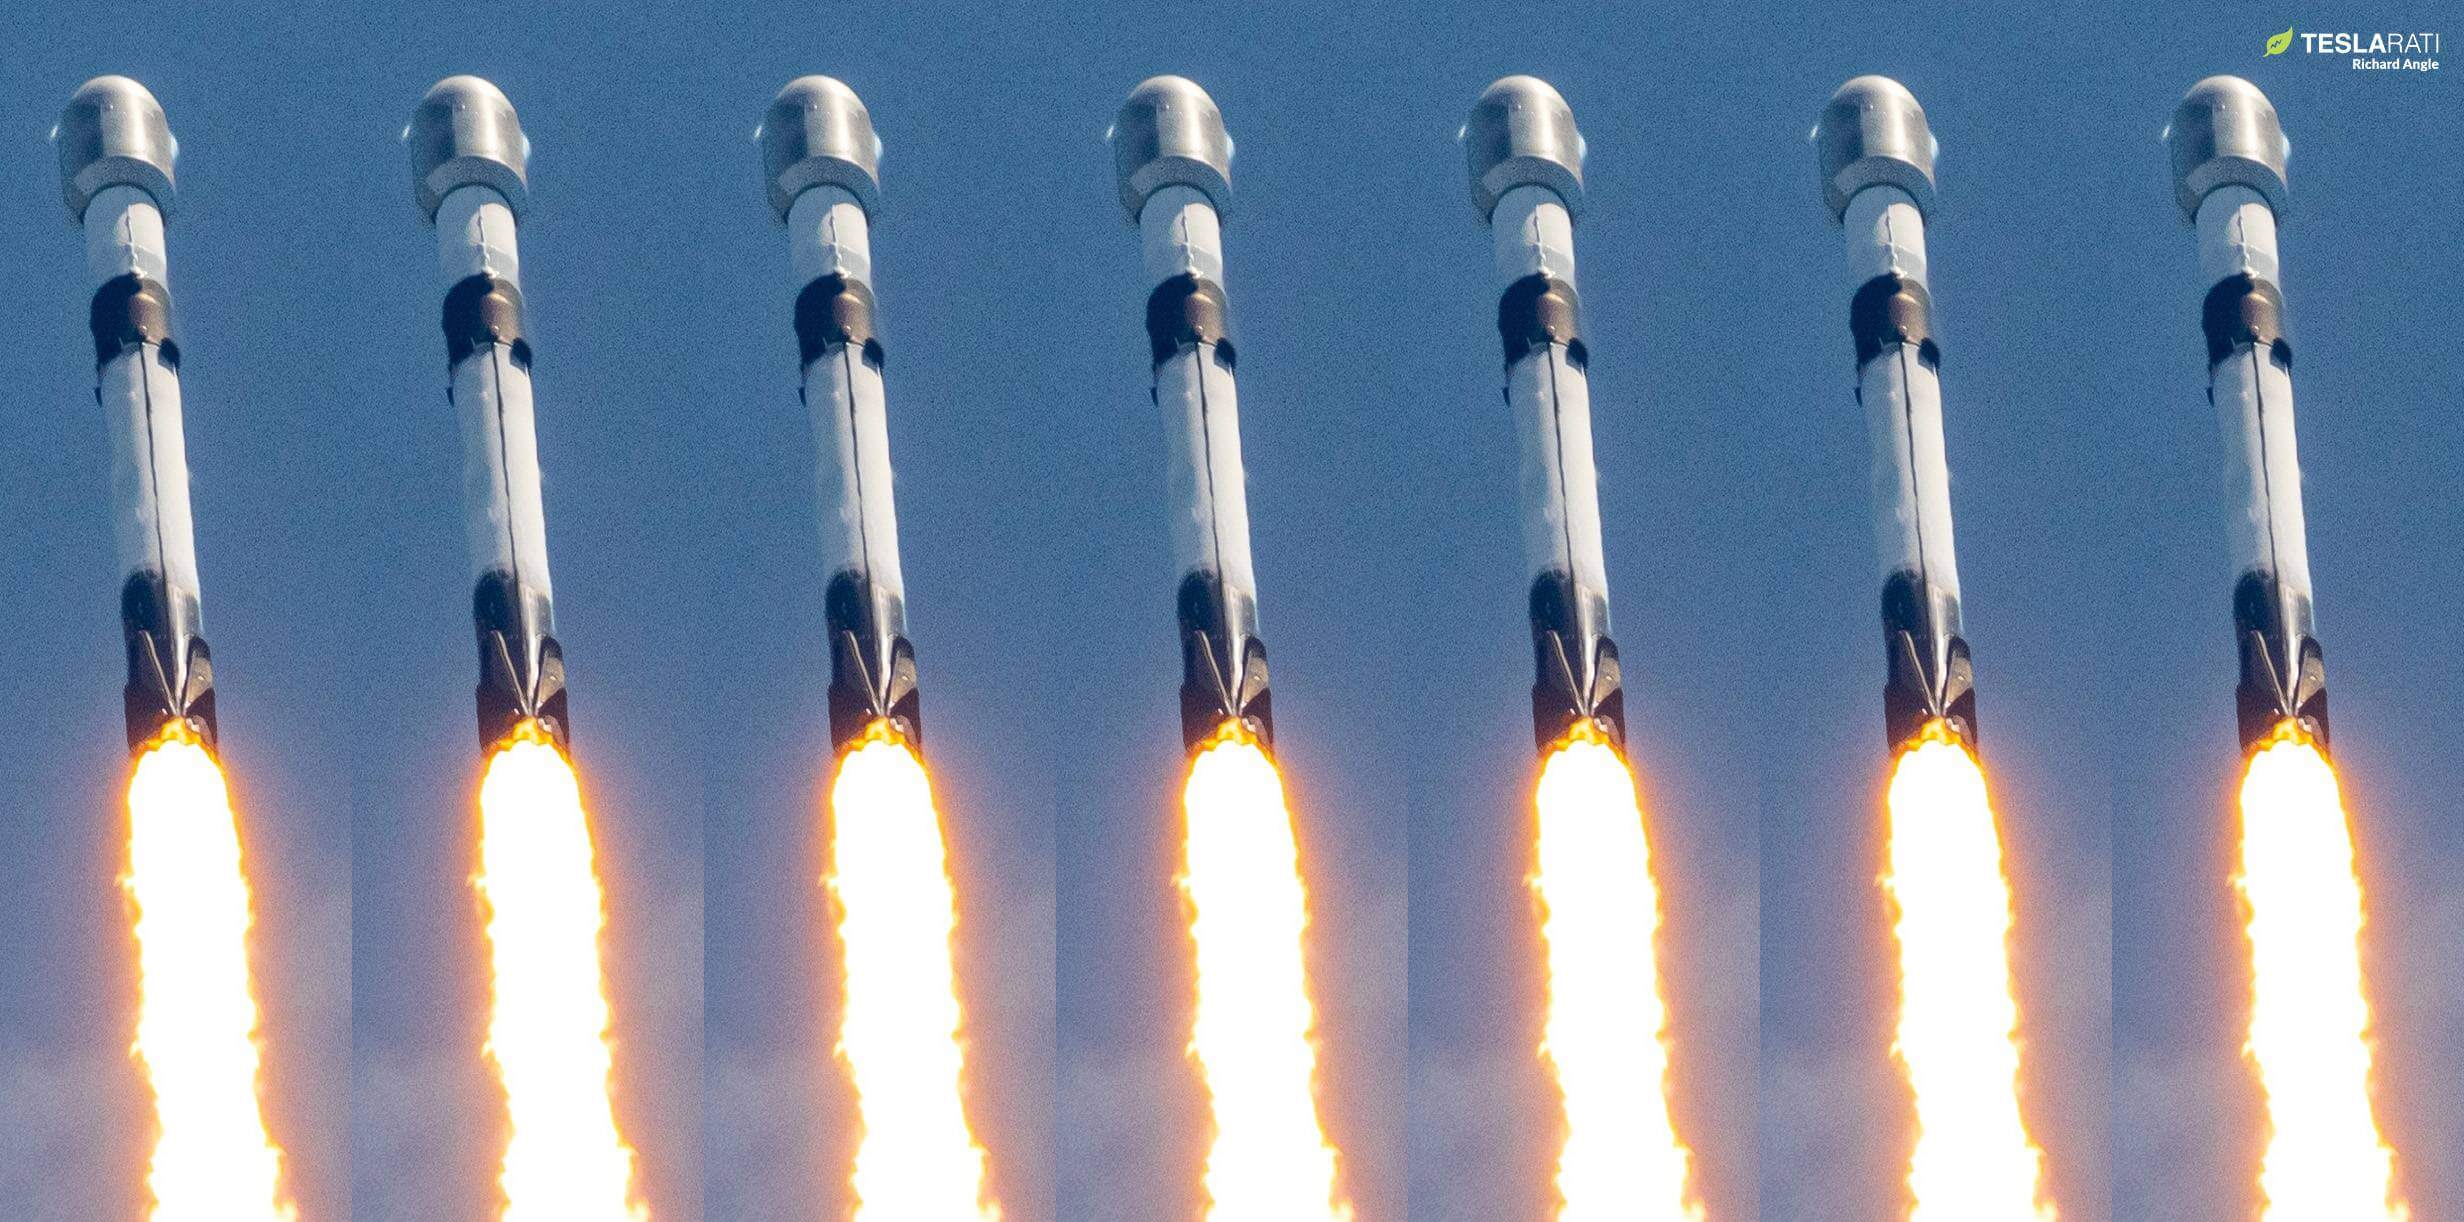 L’objectif d’Elon Musk de 100 lancements SpaceX en 2023 semble étonnamment réalisable